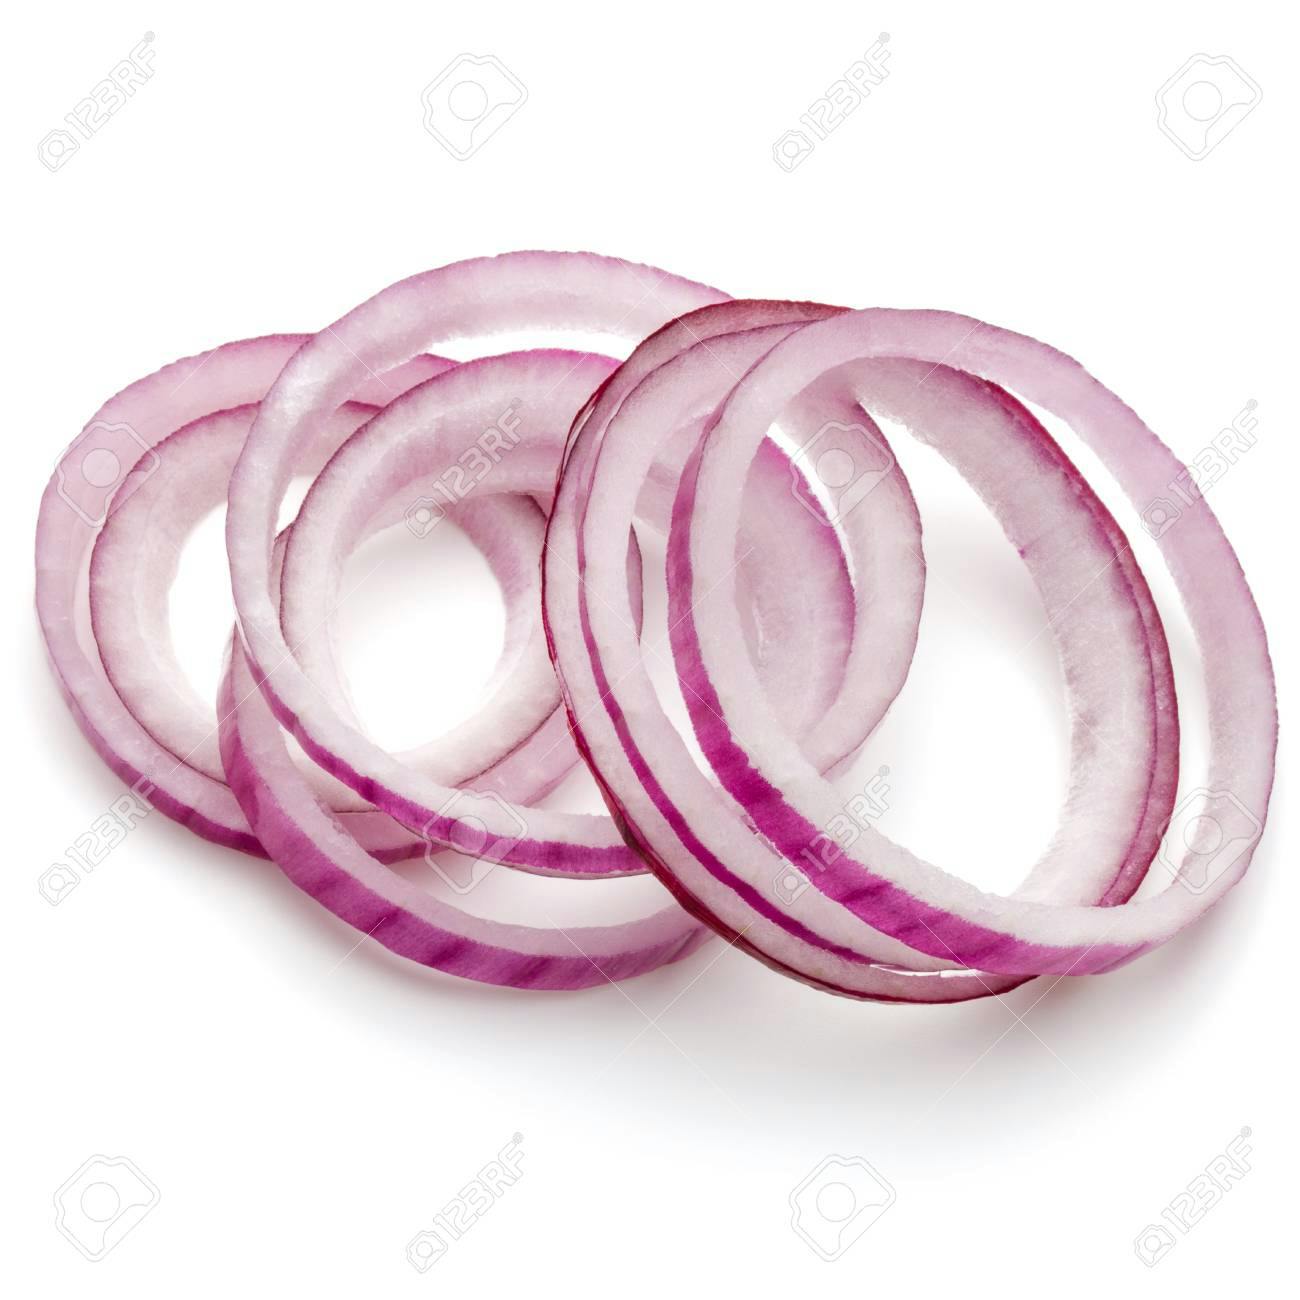 an onion